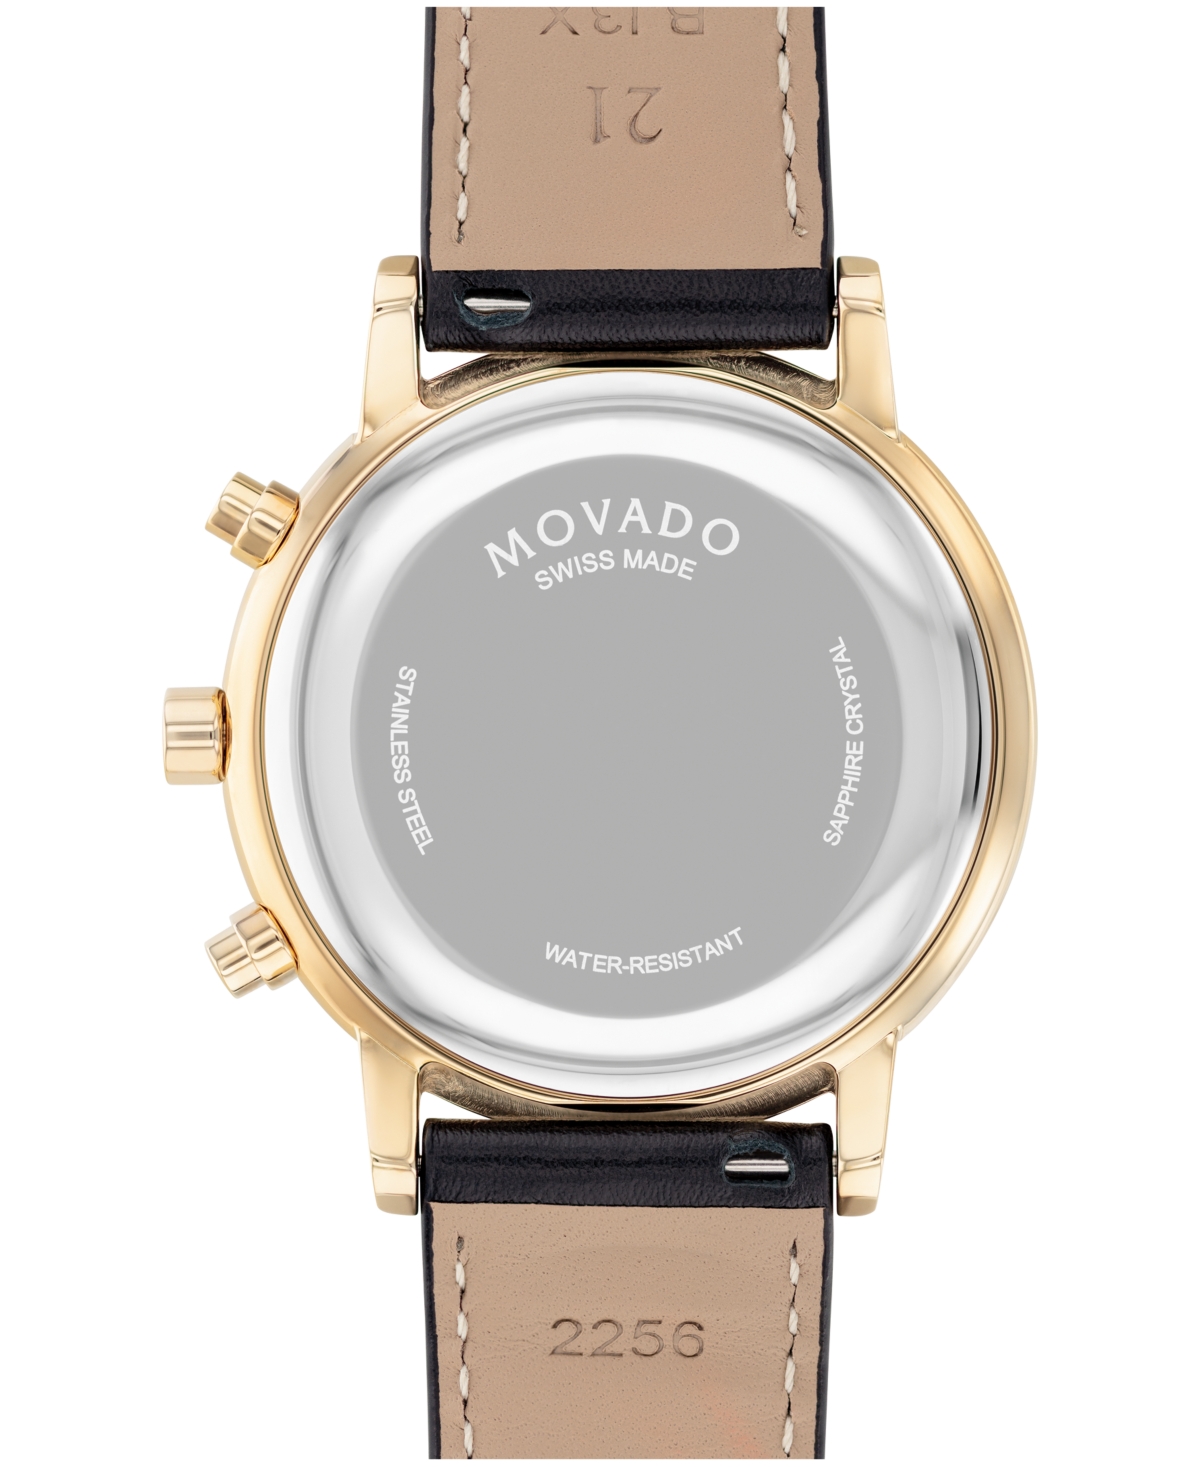 Shop Movado Men's Museum Classic Swiss Quartz Chronograph Black Leather Watch 42mm